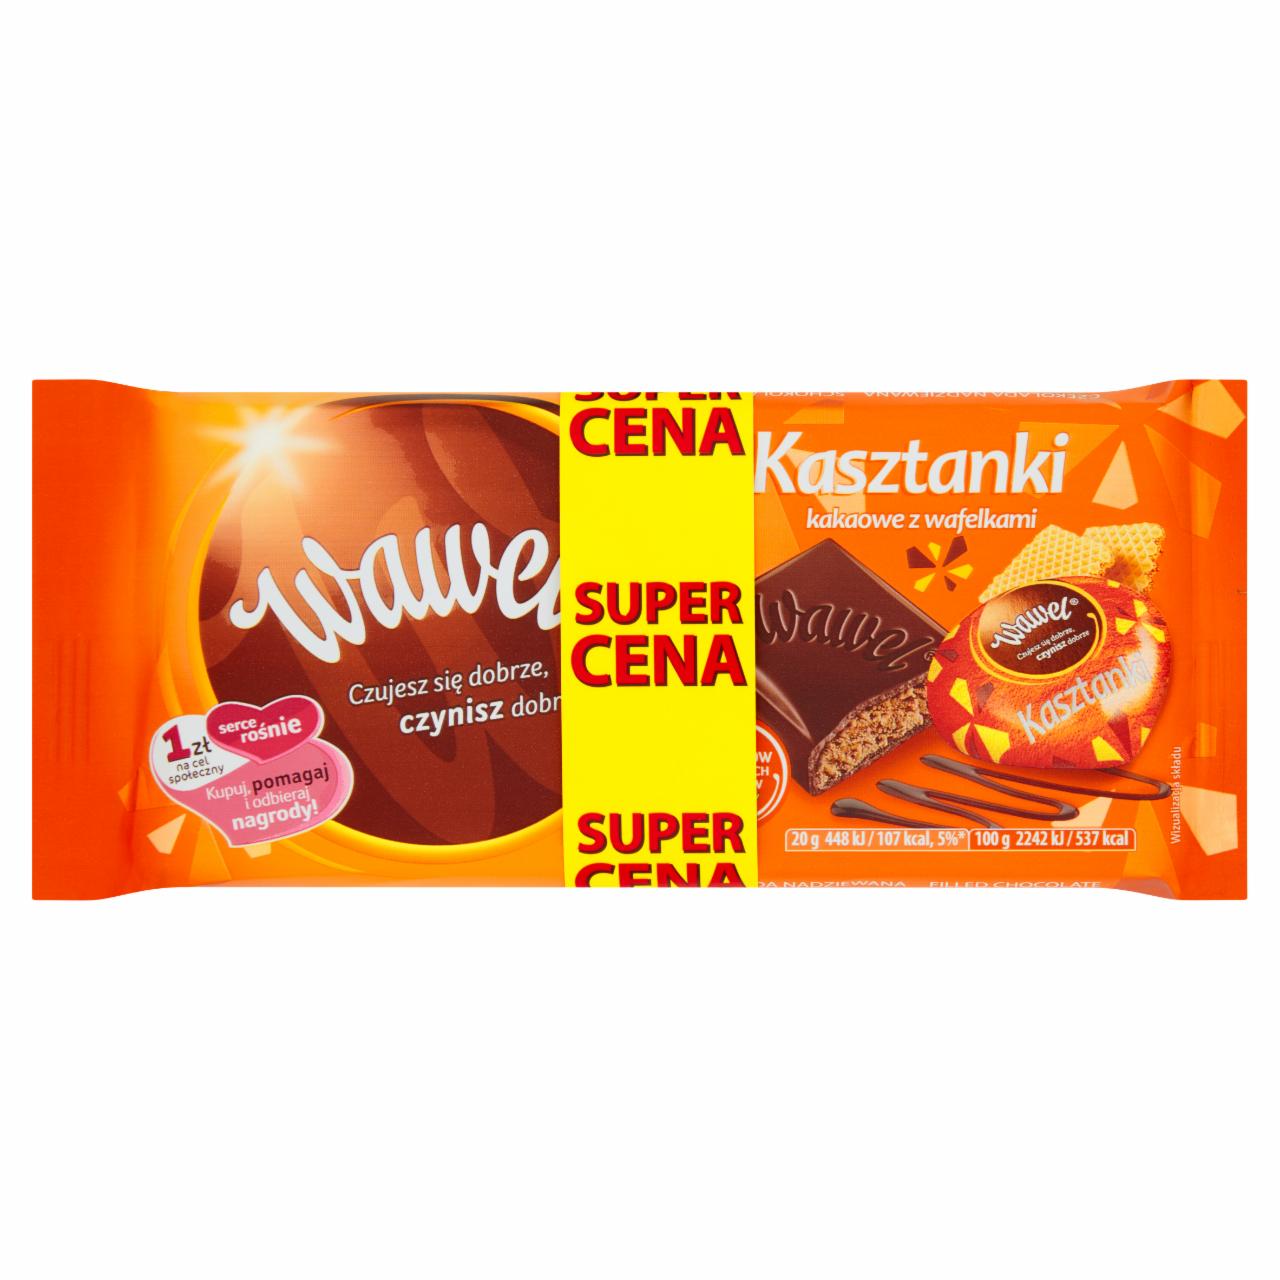 Zdjęcia - Wawel Czekolada nadziewana Kasztanki kakaowe z wafelkami 300 g (3 x 100 g)